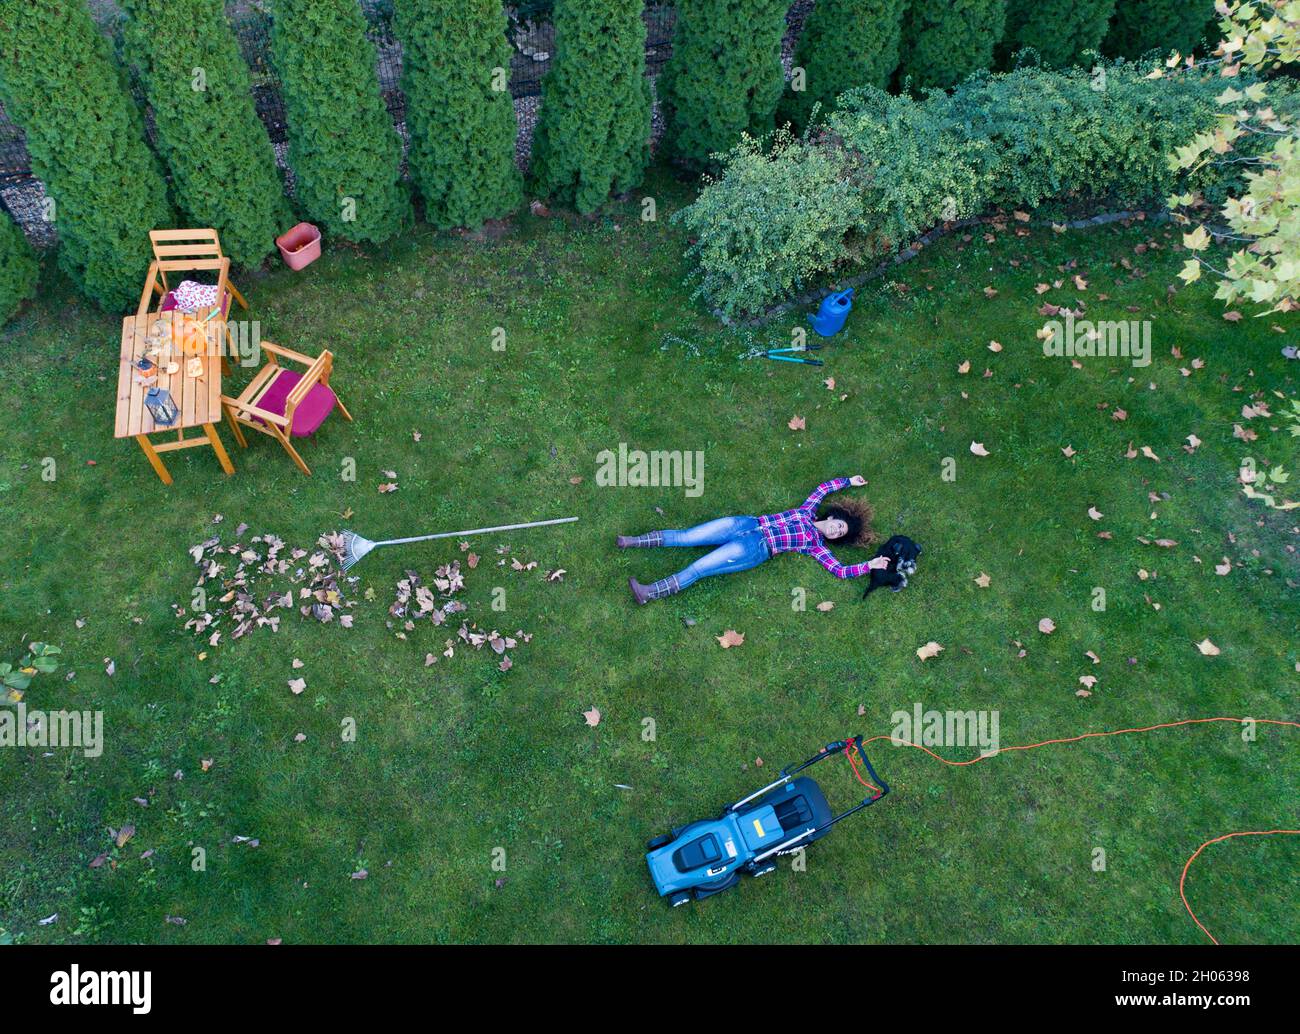 Immagine aerea della ragazza sdraiata sul prato fresco tagliato con il cane, godendo di erba verde dopo la falciatura. Spara dal drone Foto Stock